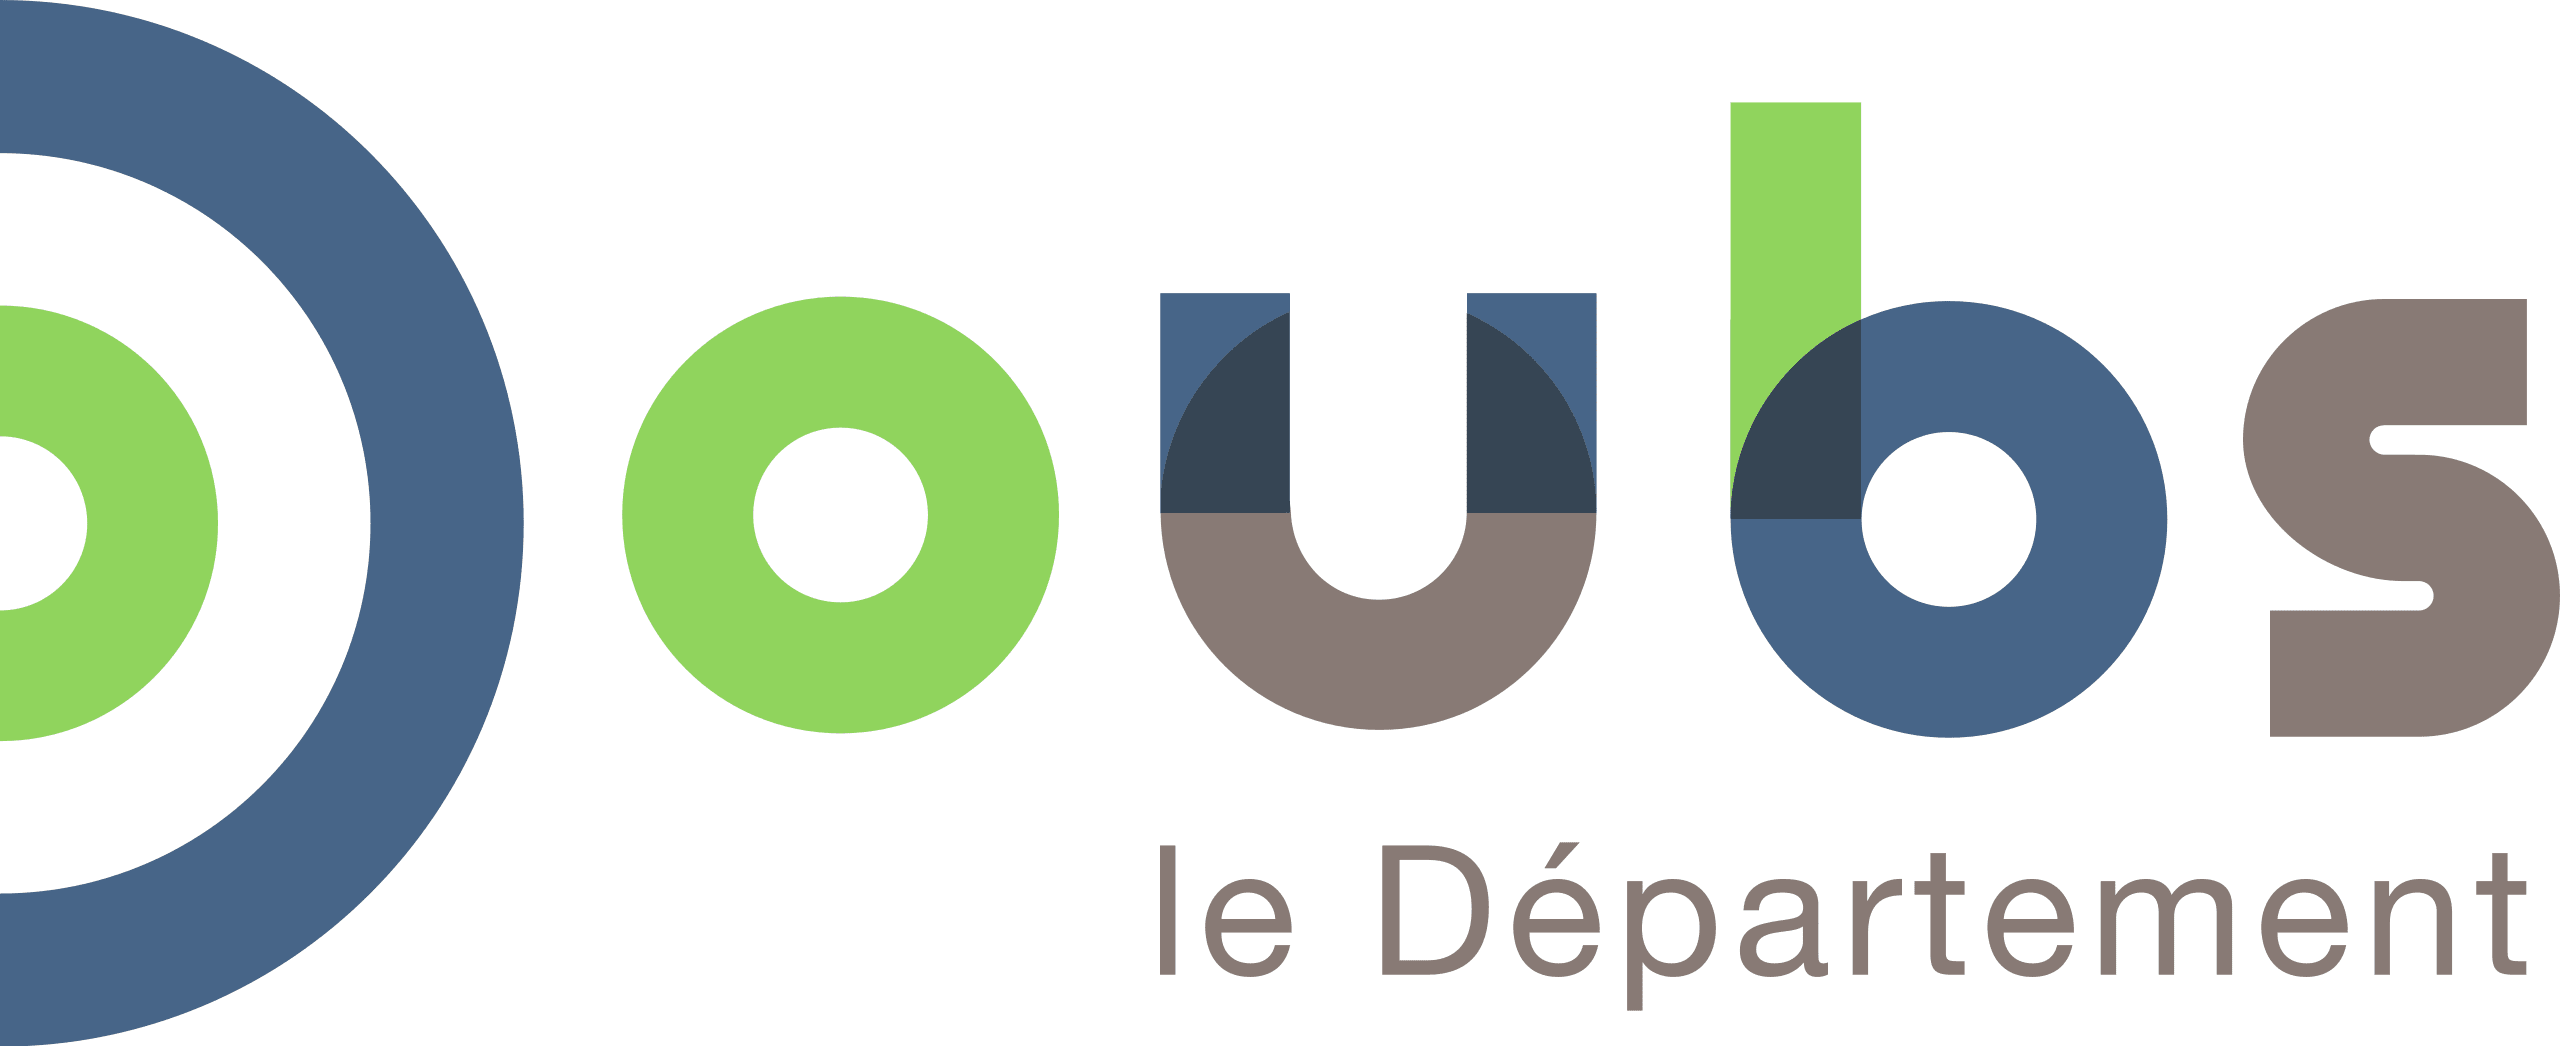 Département Doubs